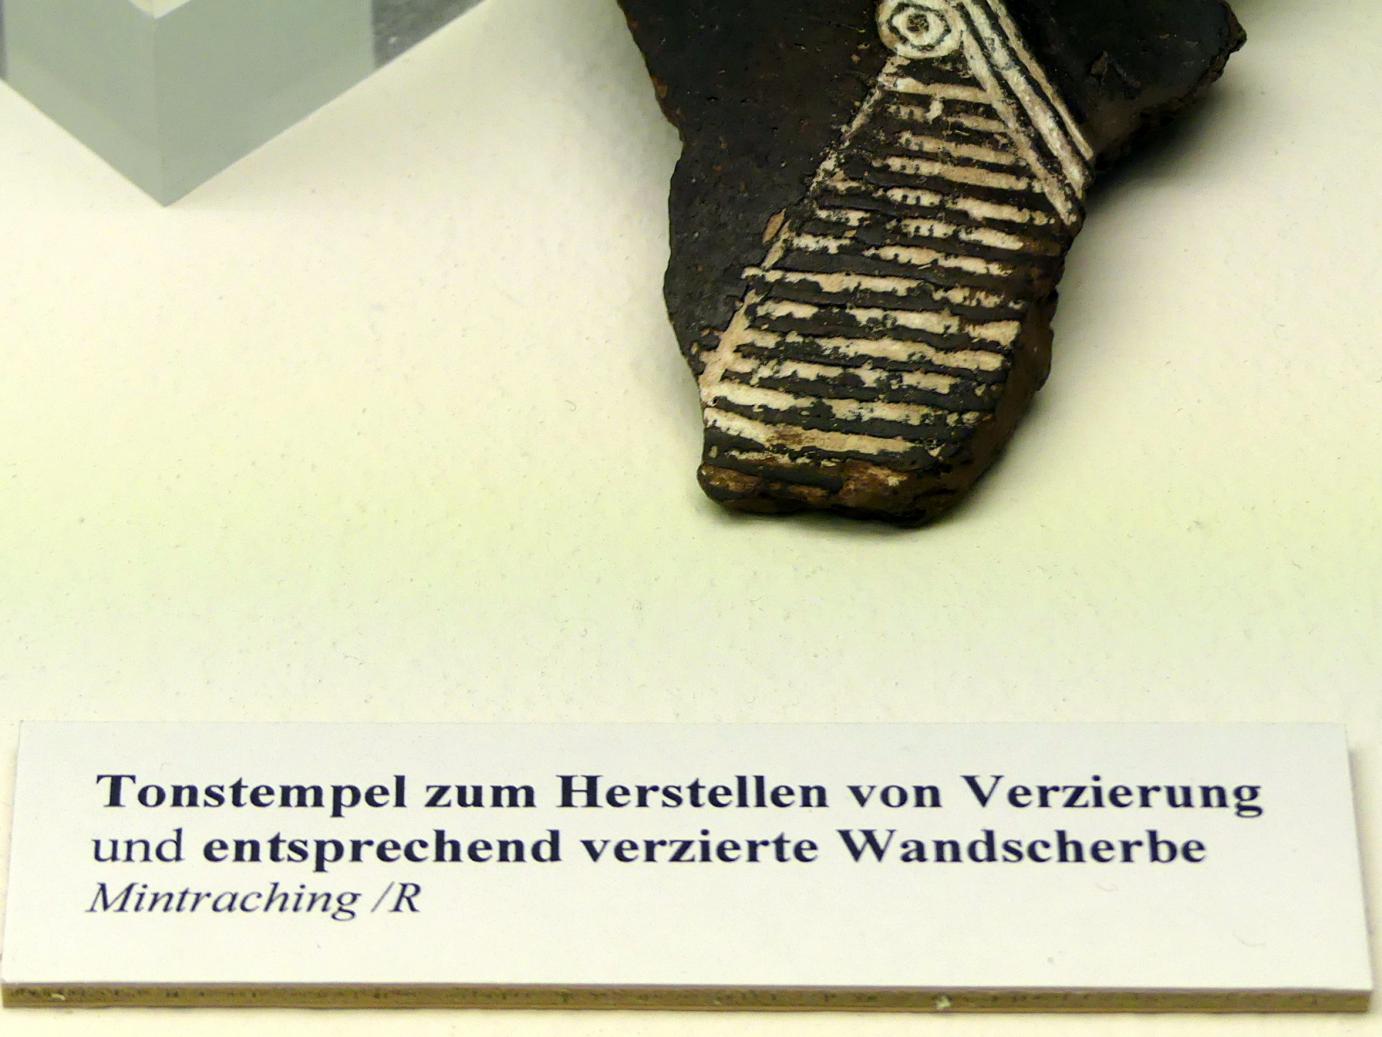 Tonstempel zum Herstellen von Verzierungen, Hallstattzeit, 700 - 200 v. Chr., Bild 2/2